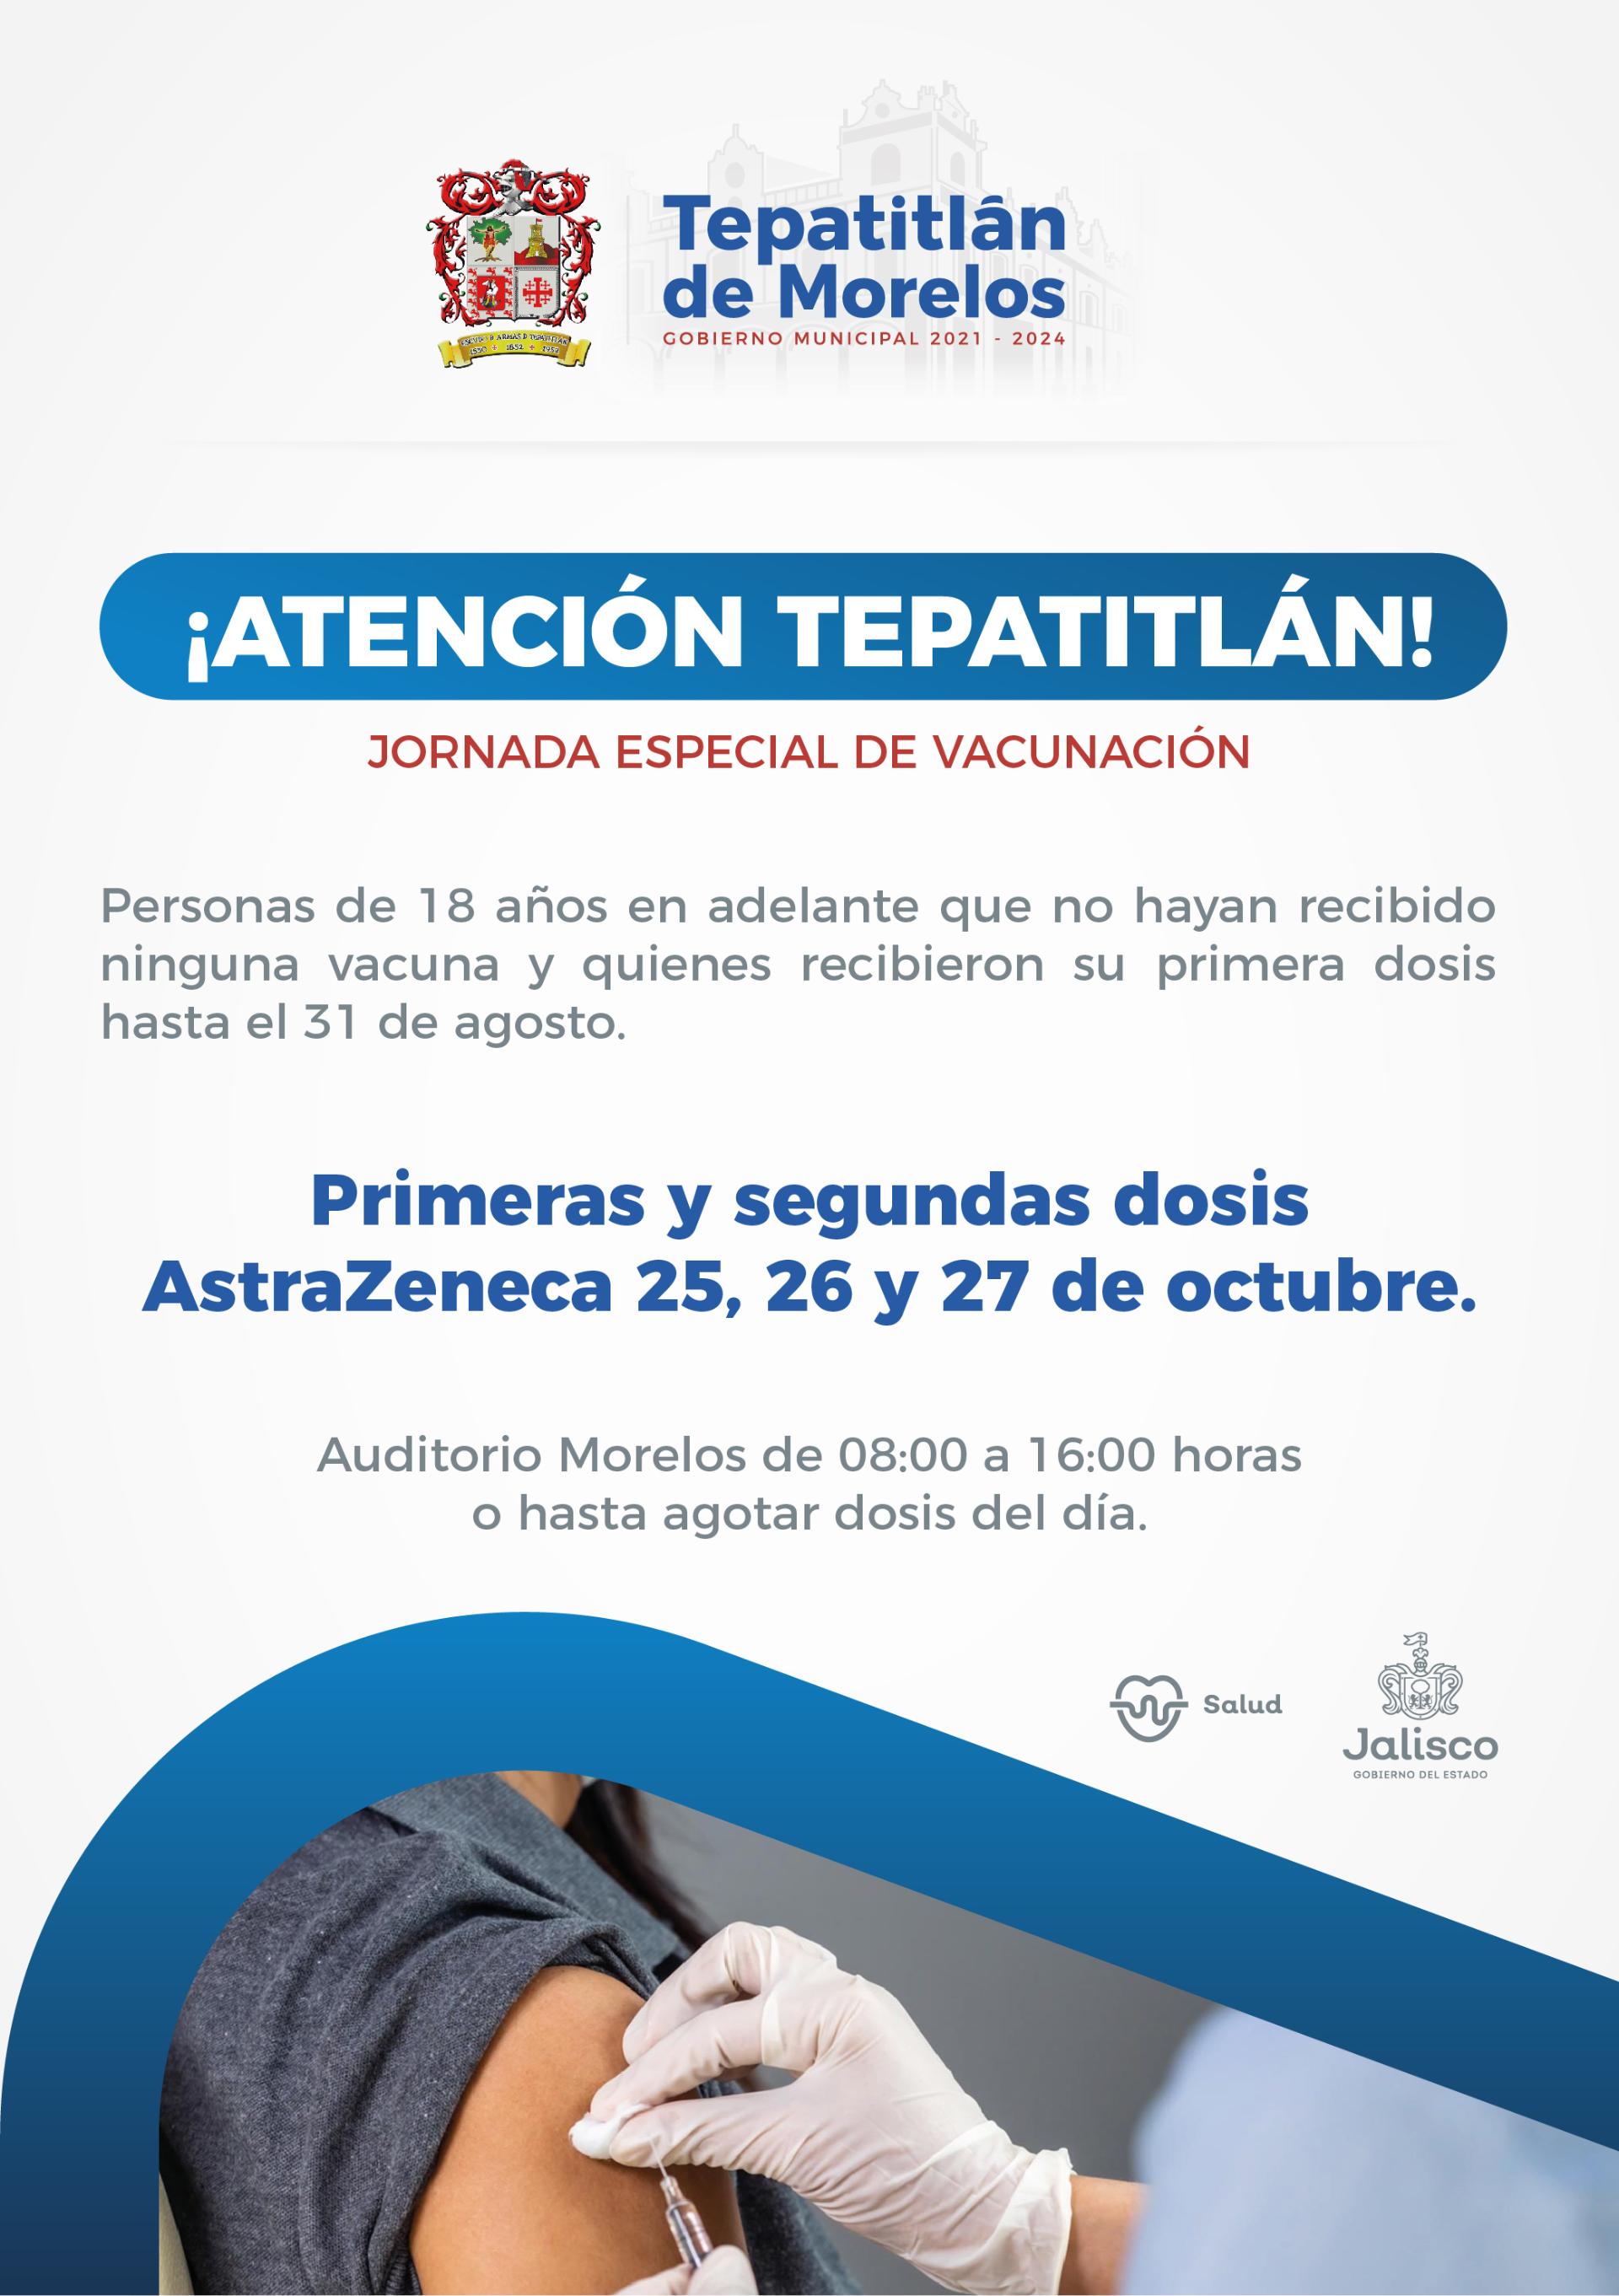 Jornada especial de vacunación COVID en Tepatitlán